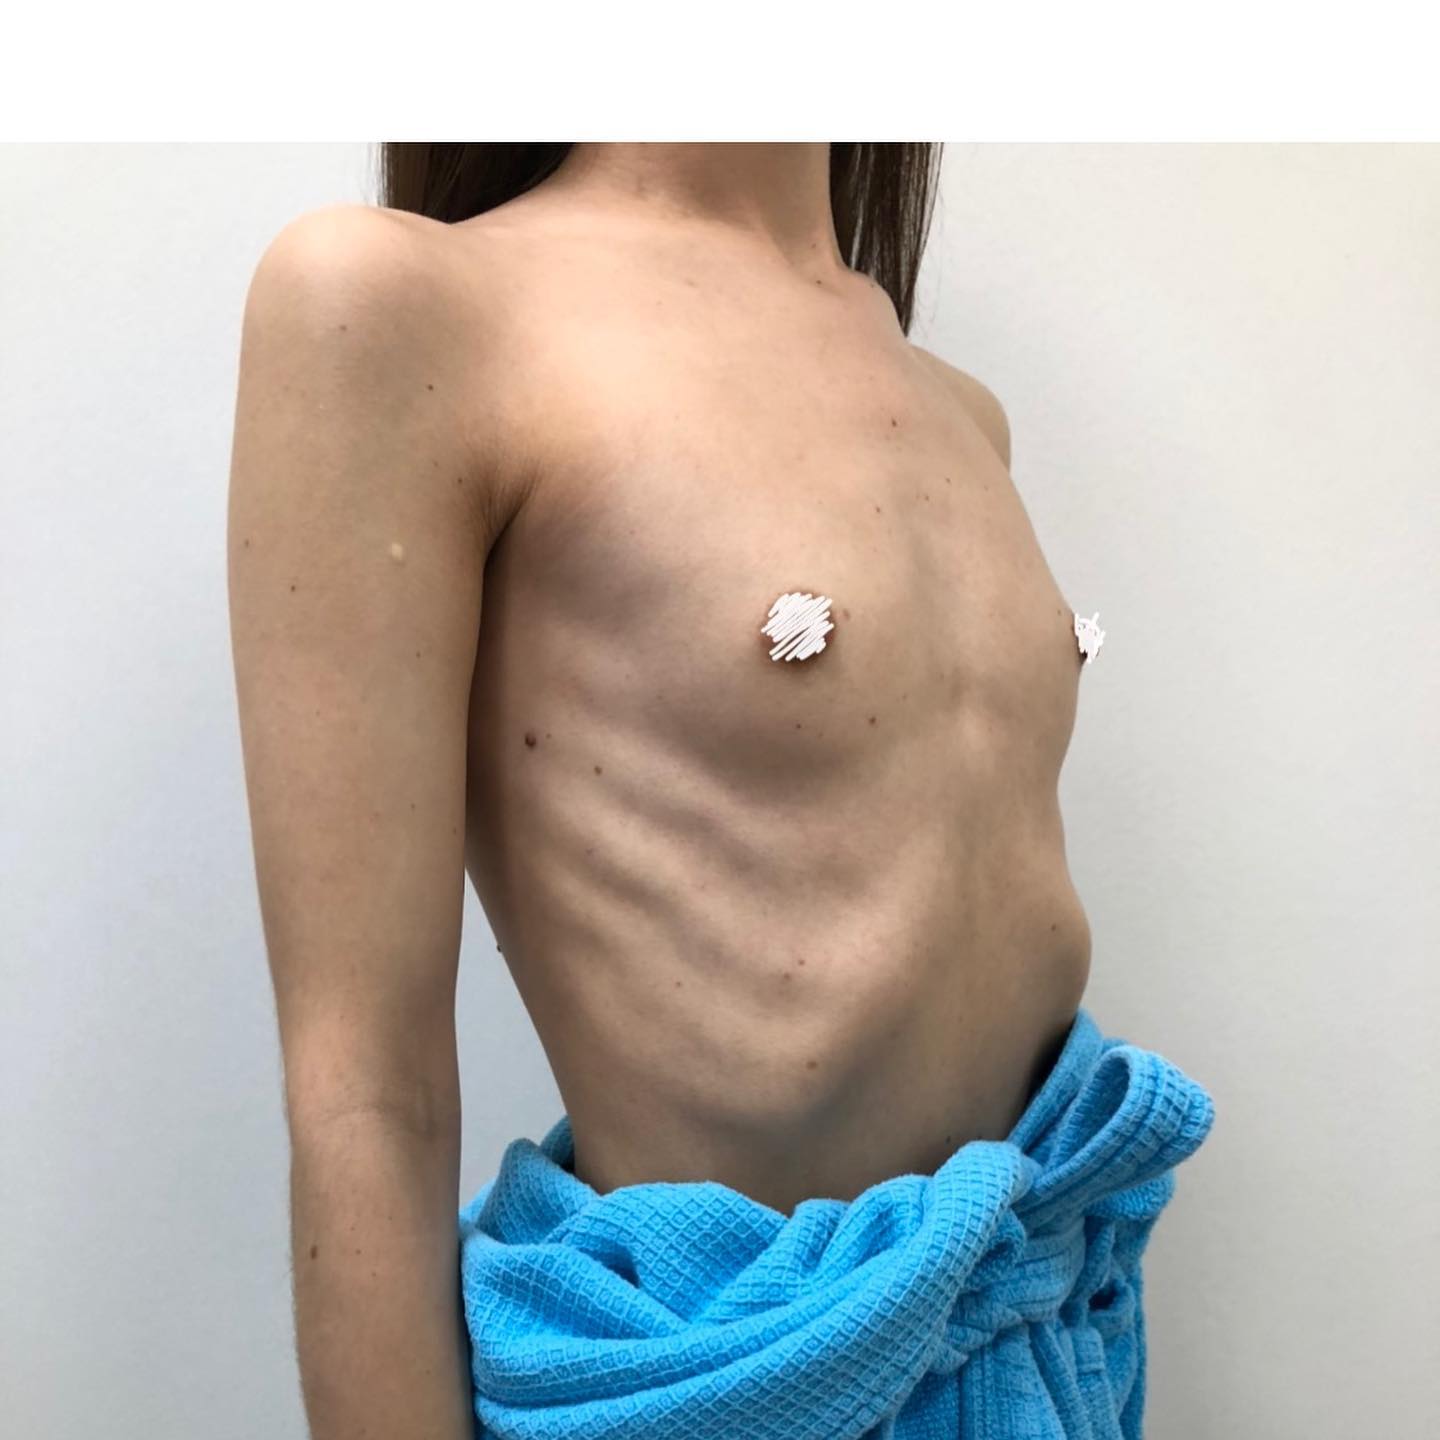 Увеличение груди — Фото до